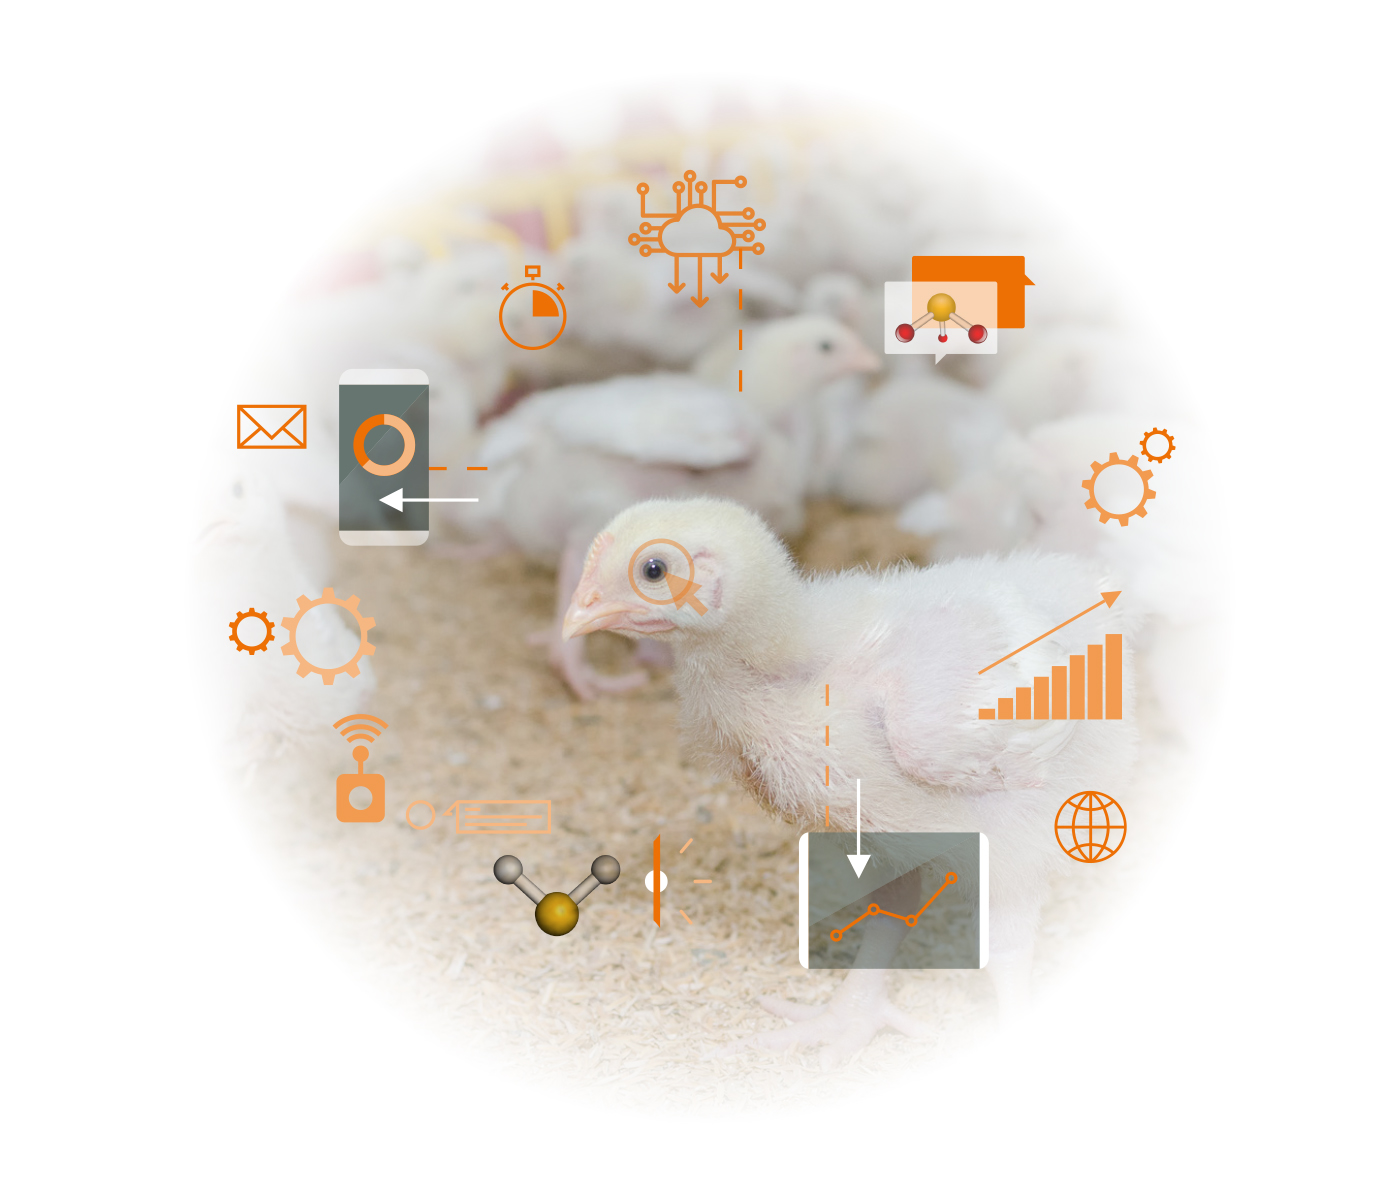 Gases nocivos emitidos por granjas avícolas: Cómo disminuir el impacto...